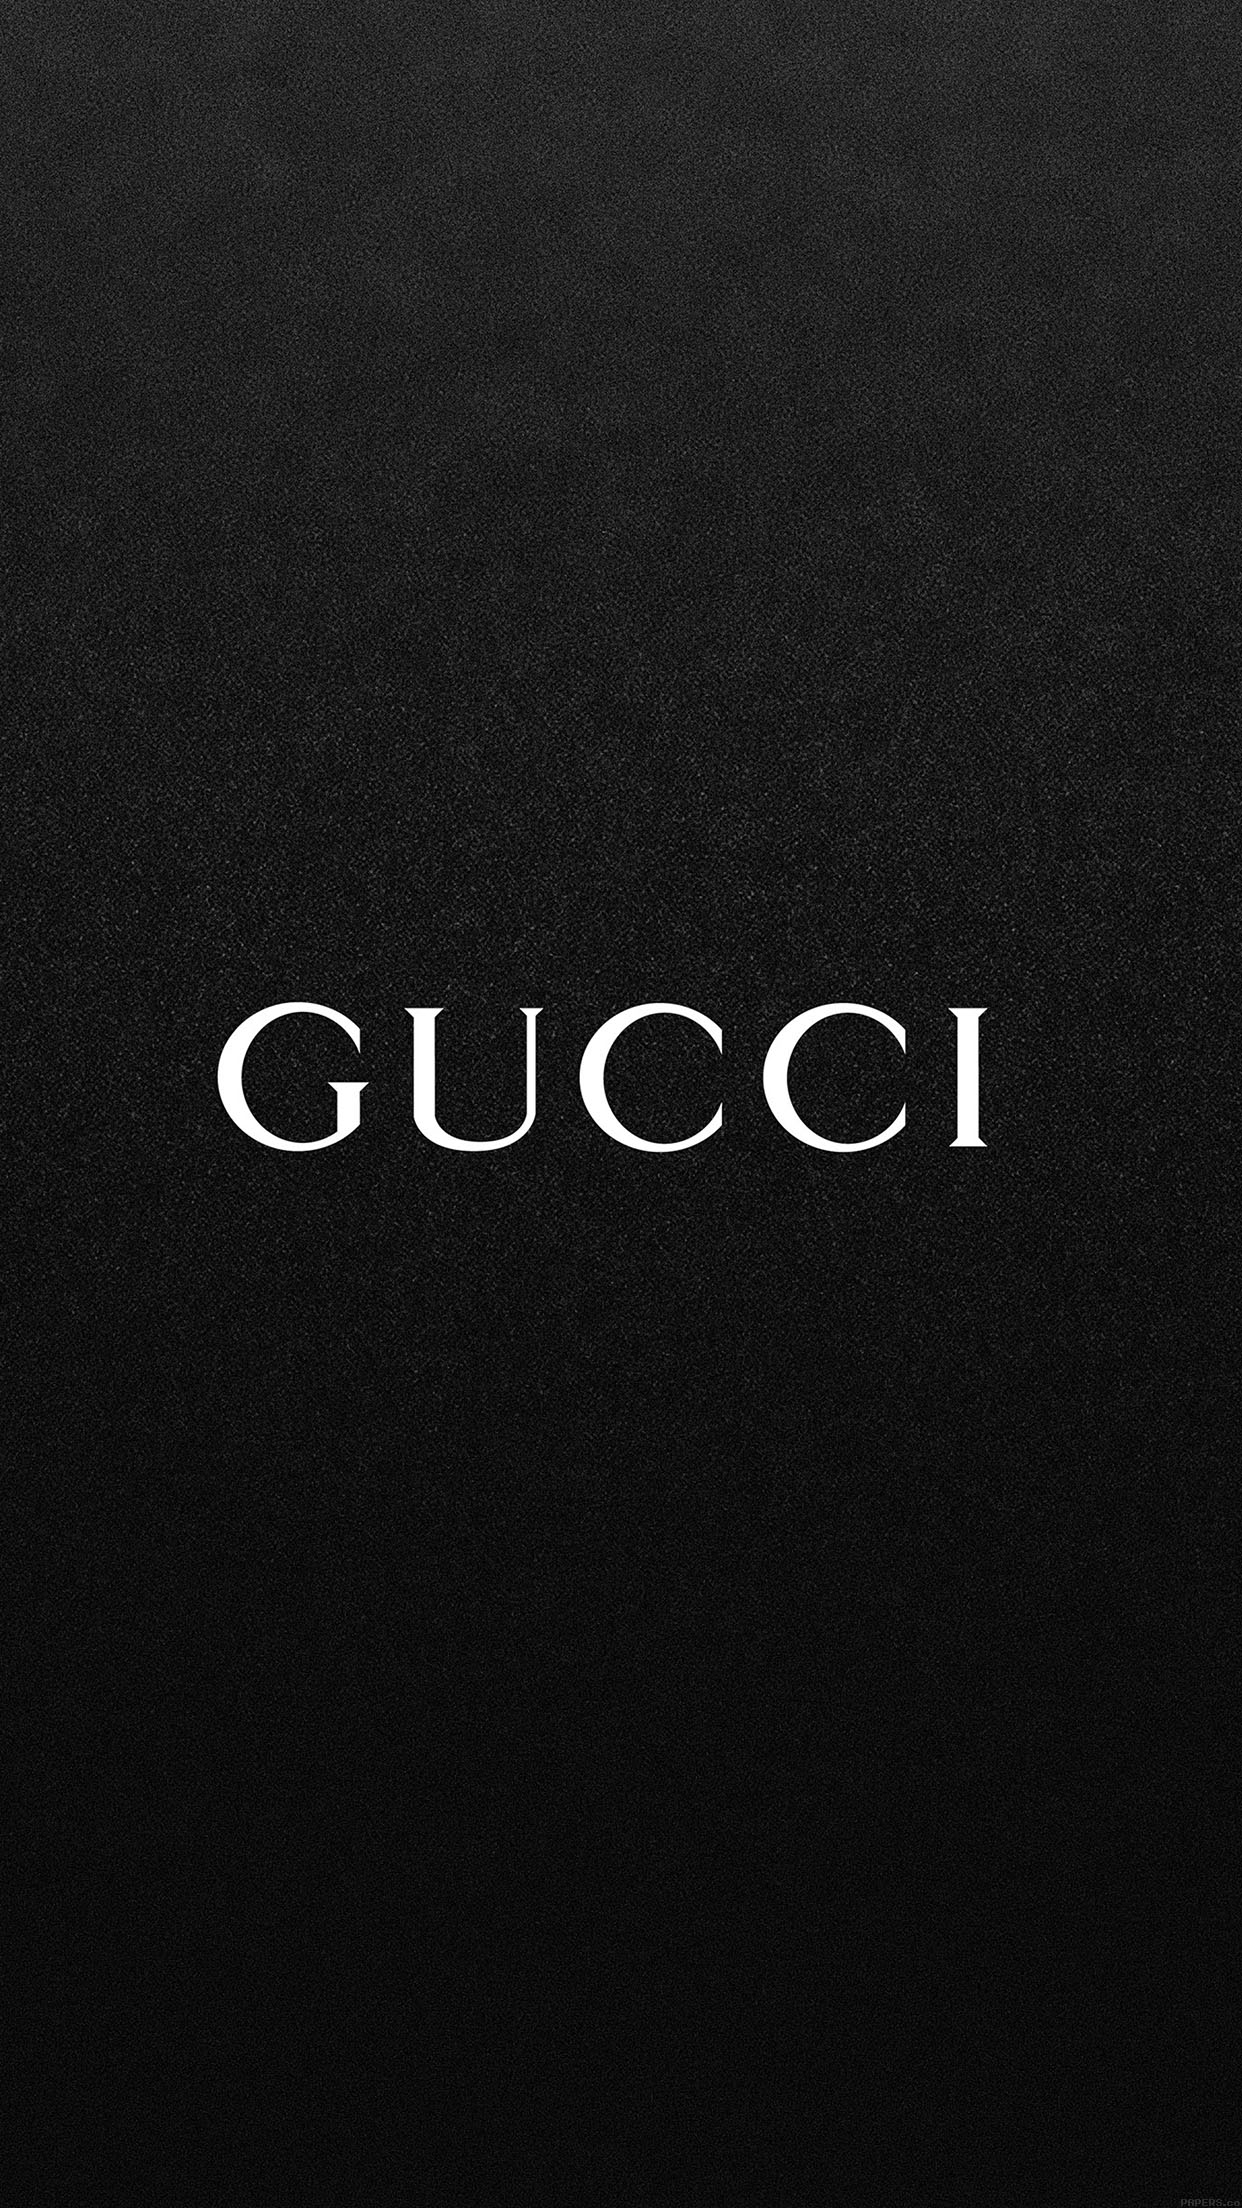 Hình nền đen giòn Gucci tuyệt đẹp